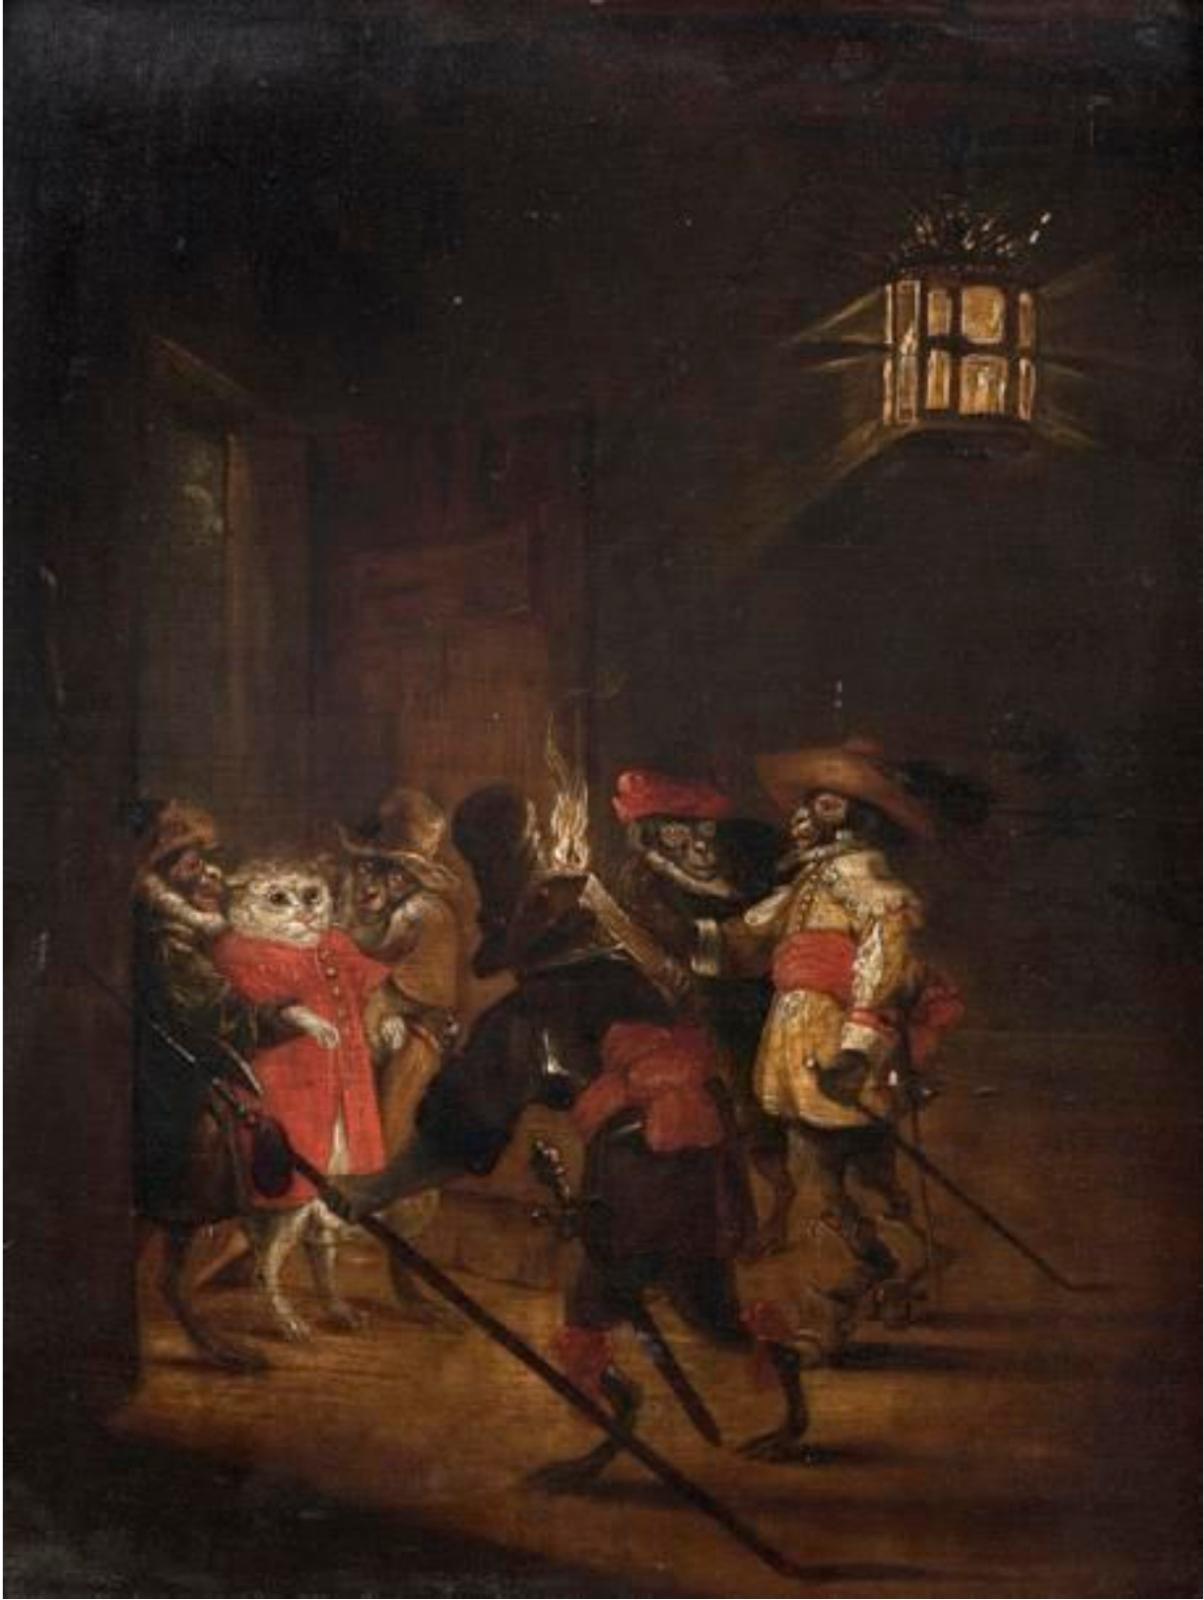 École flamande du XVIIe siècle, Le Chat arrêté par des singes militaires, huile sur panneau, 30,8 x 26,3 cm. Paris, Hôtel Drouot, 28 juin 